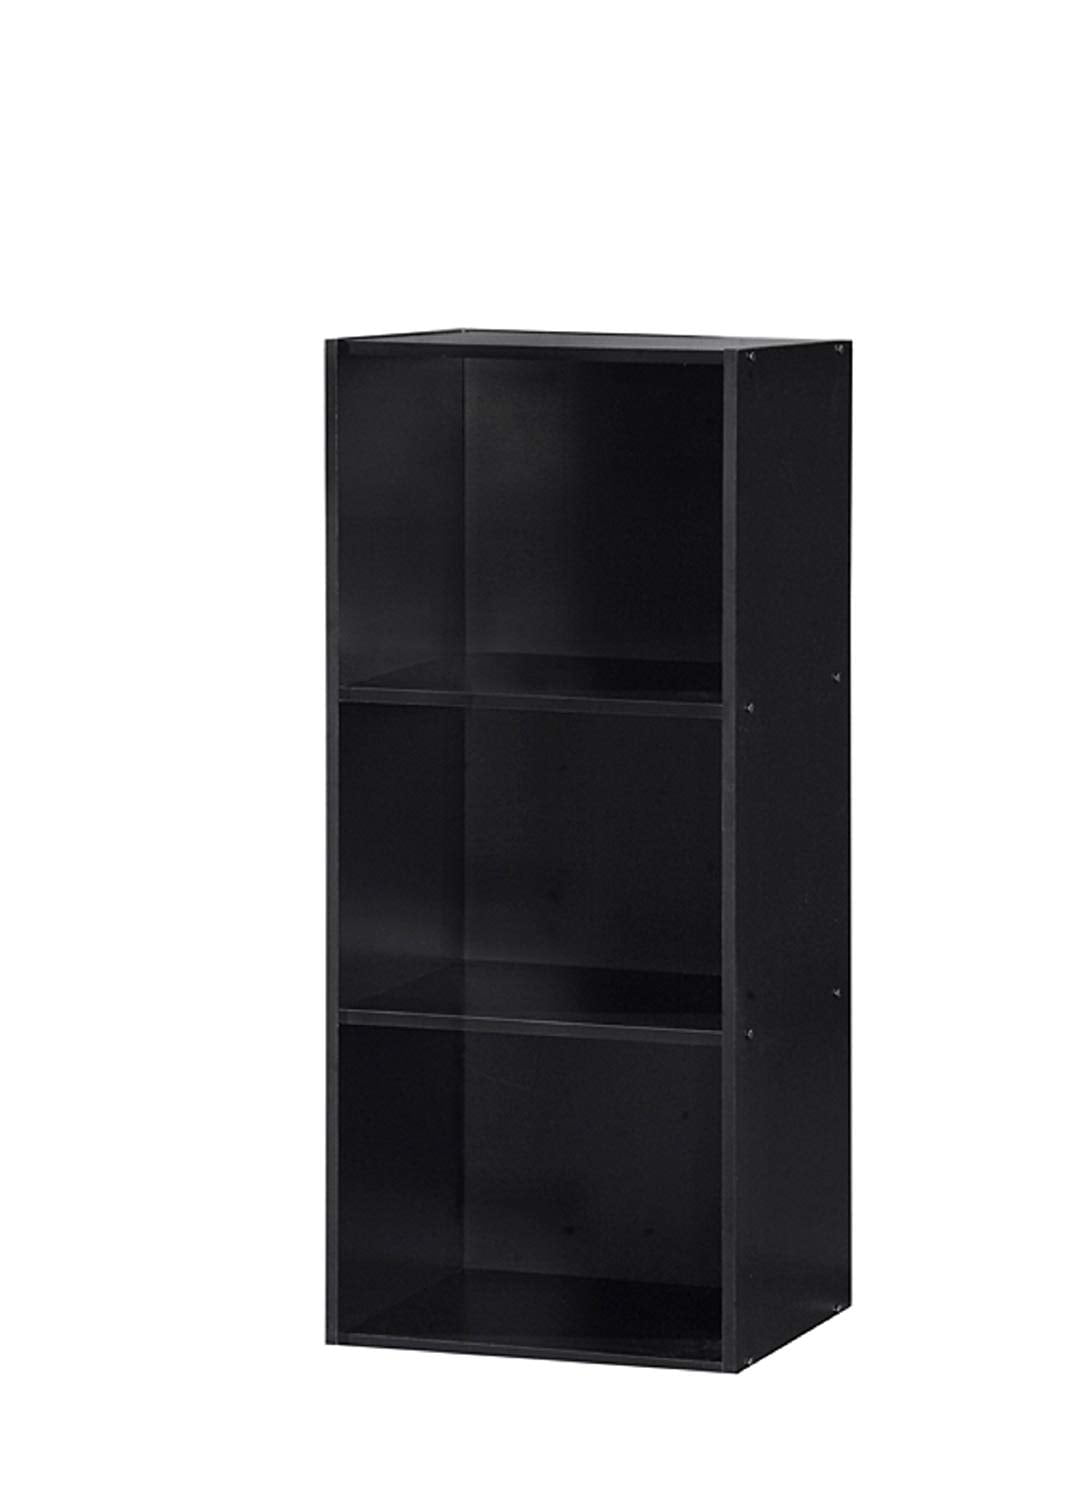 Hodedah 3 Shelve Bookcase, Black, 3 open shelves By HODEDAH IMPORT